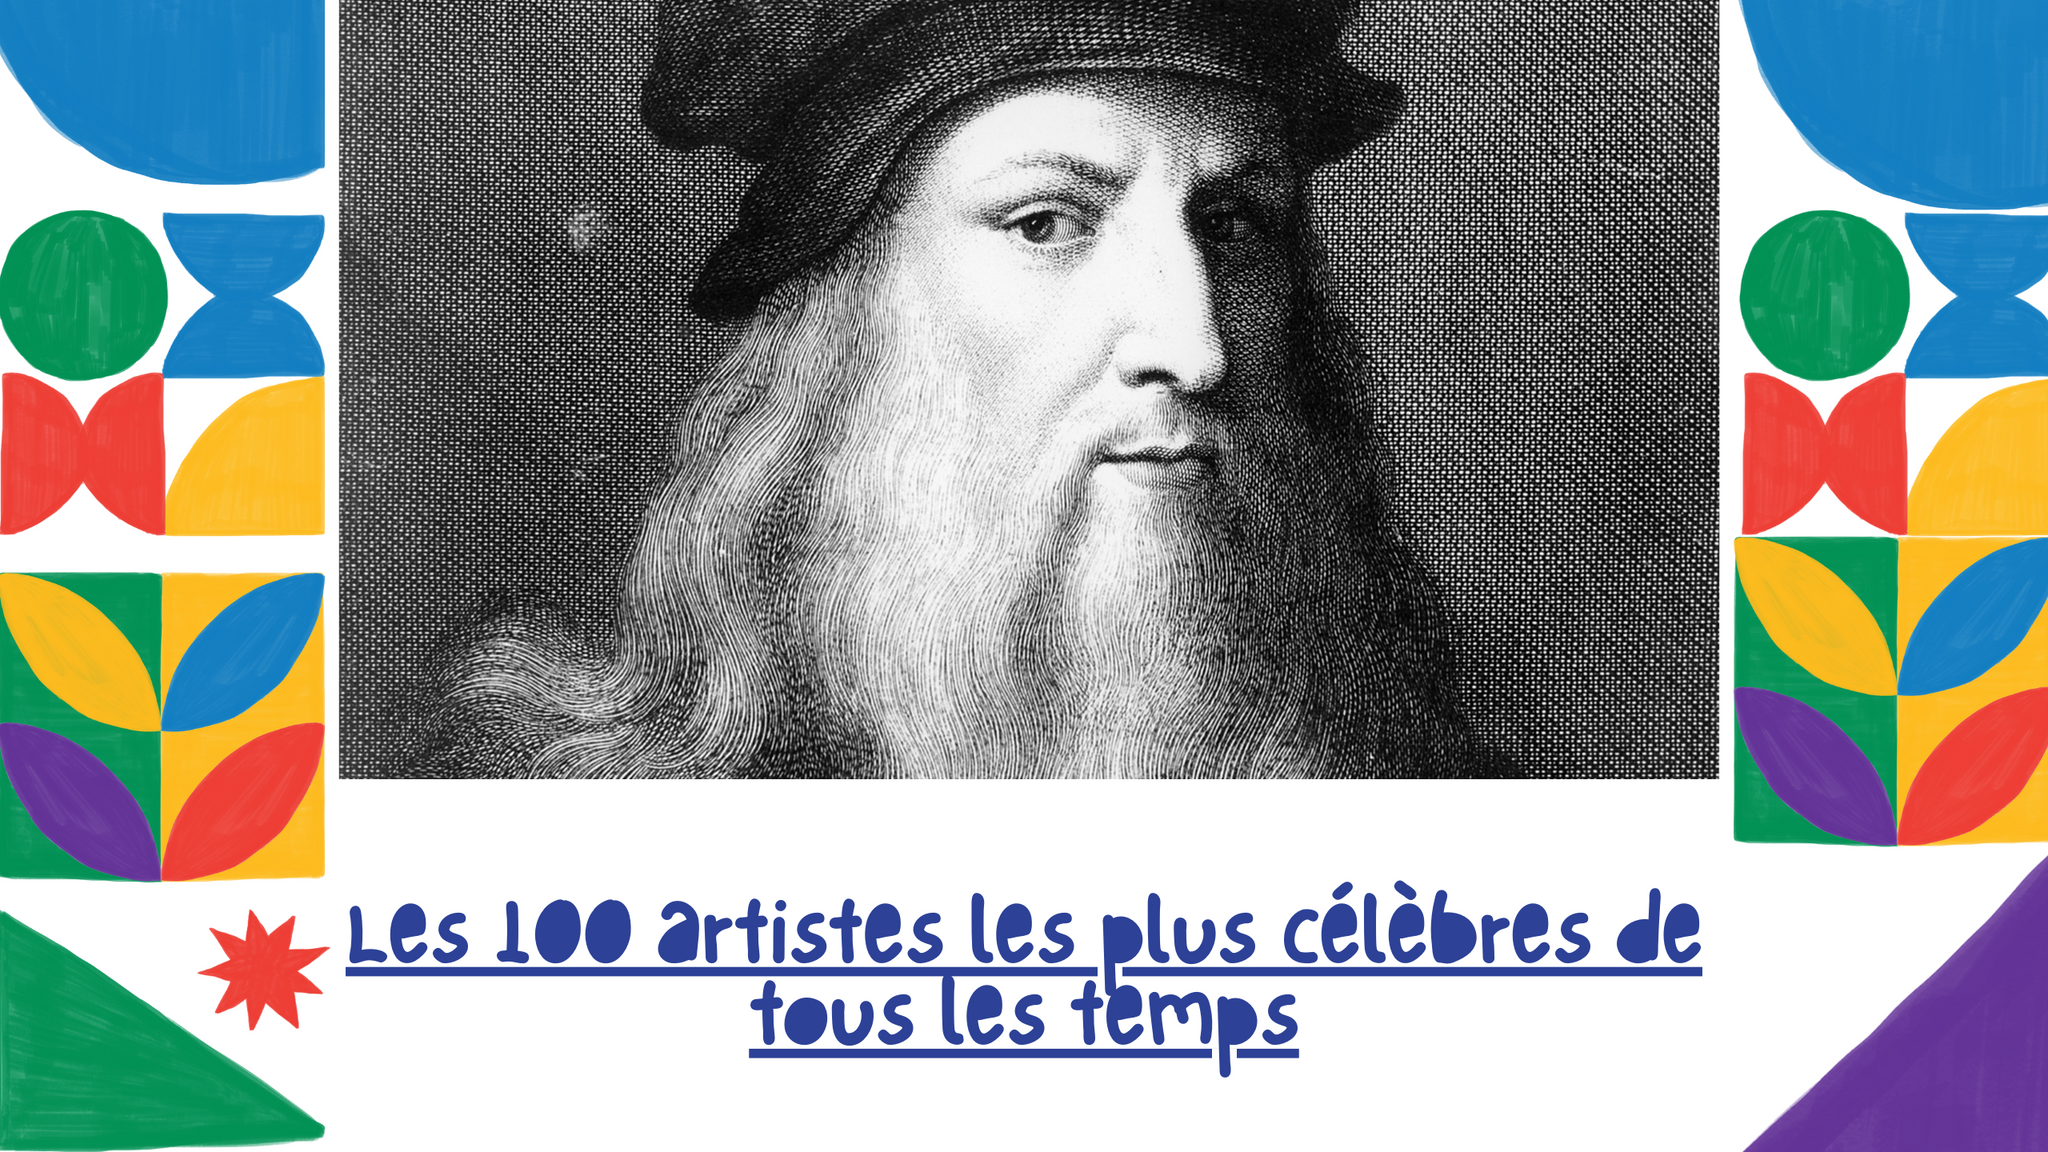 Les 100 artistes les plus célèbres de tous les temps